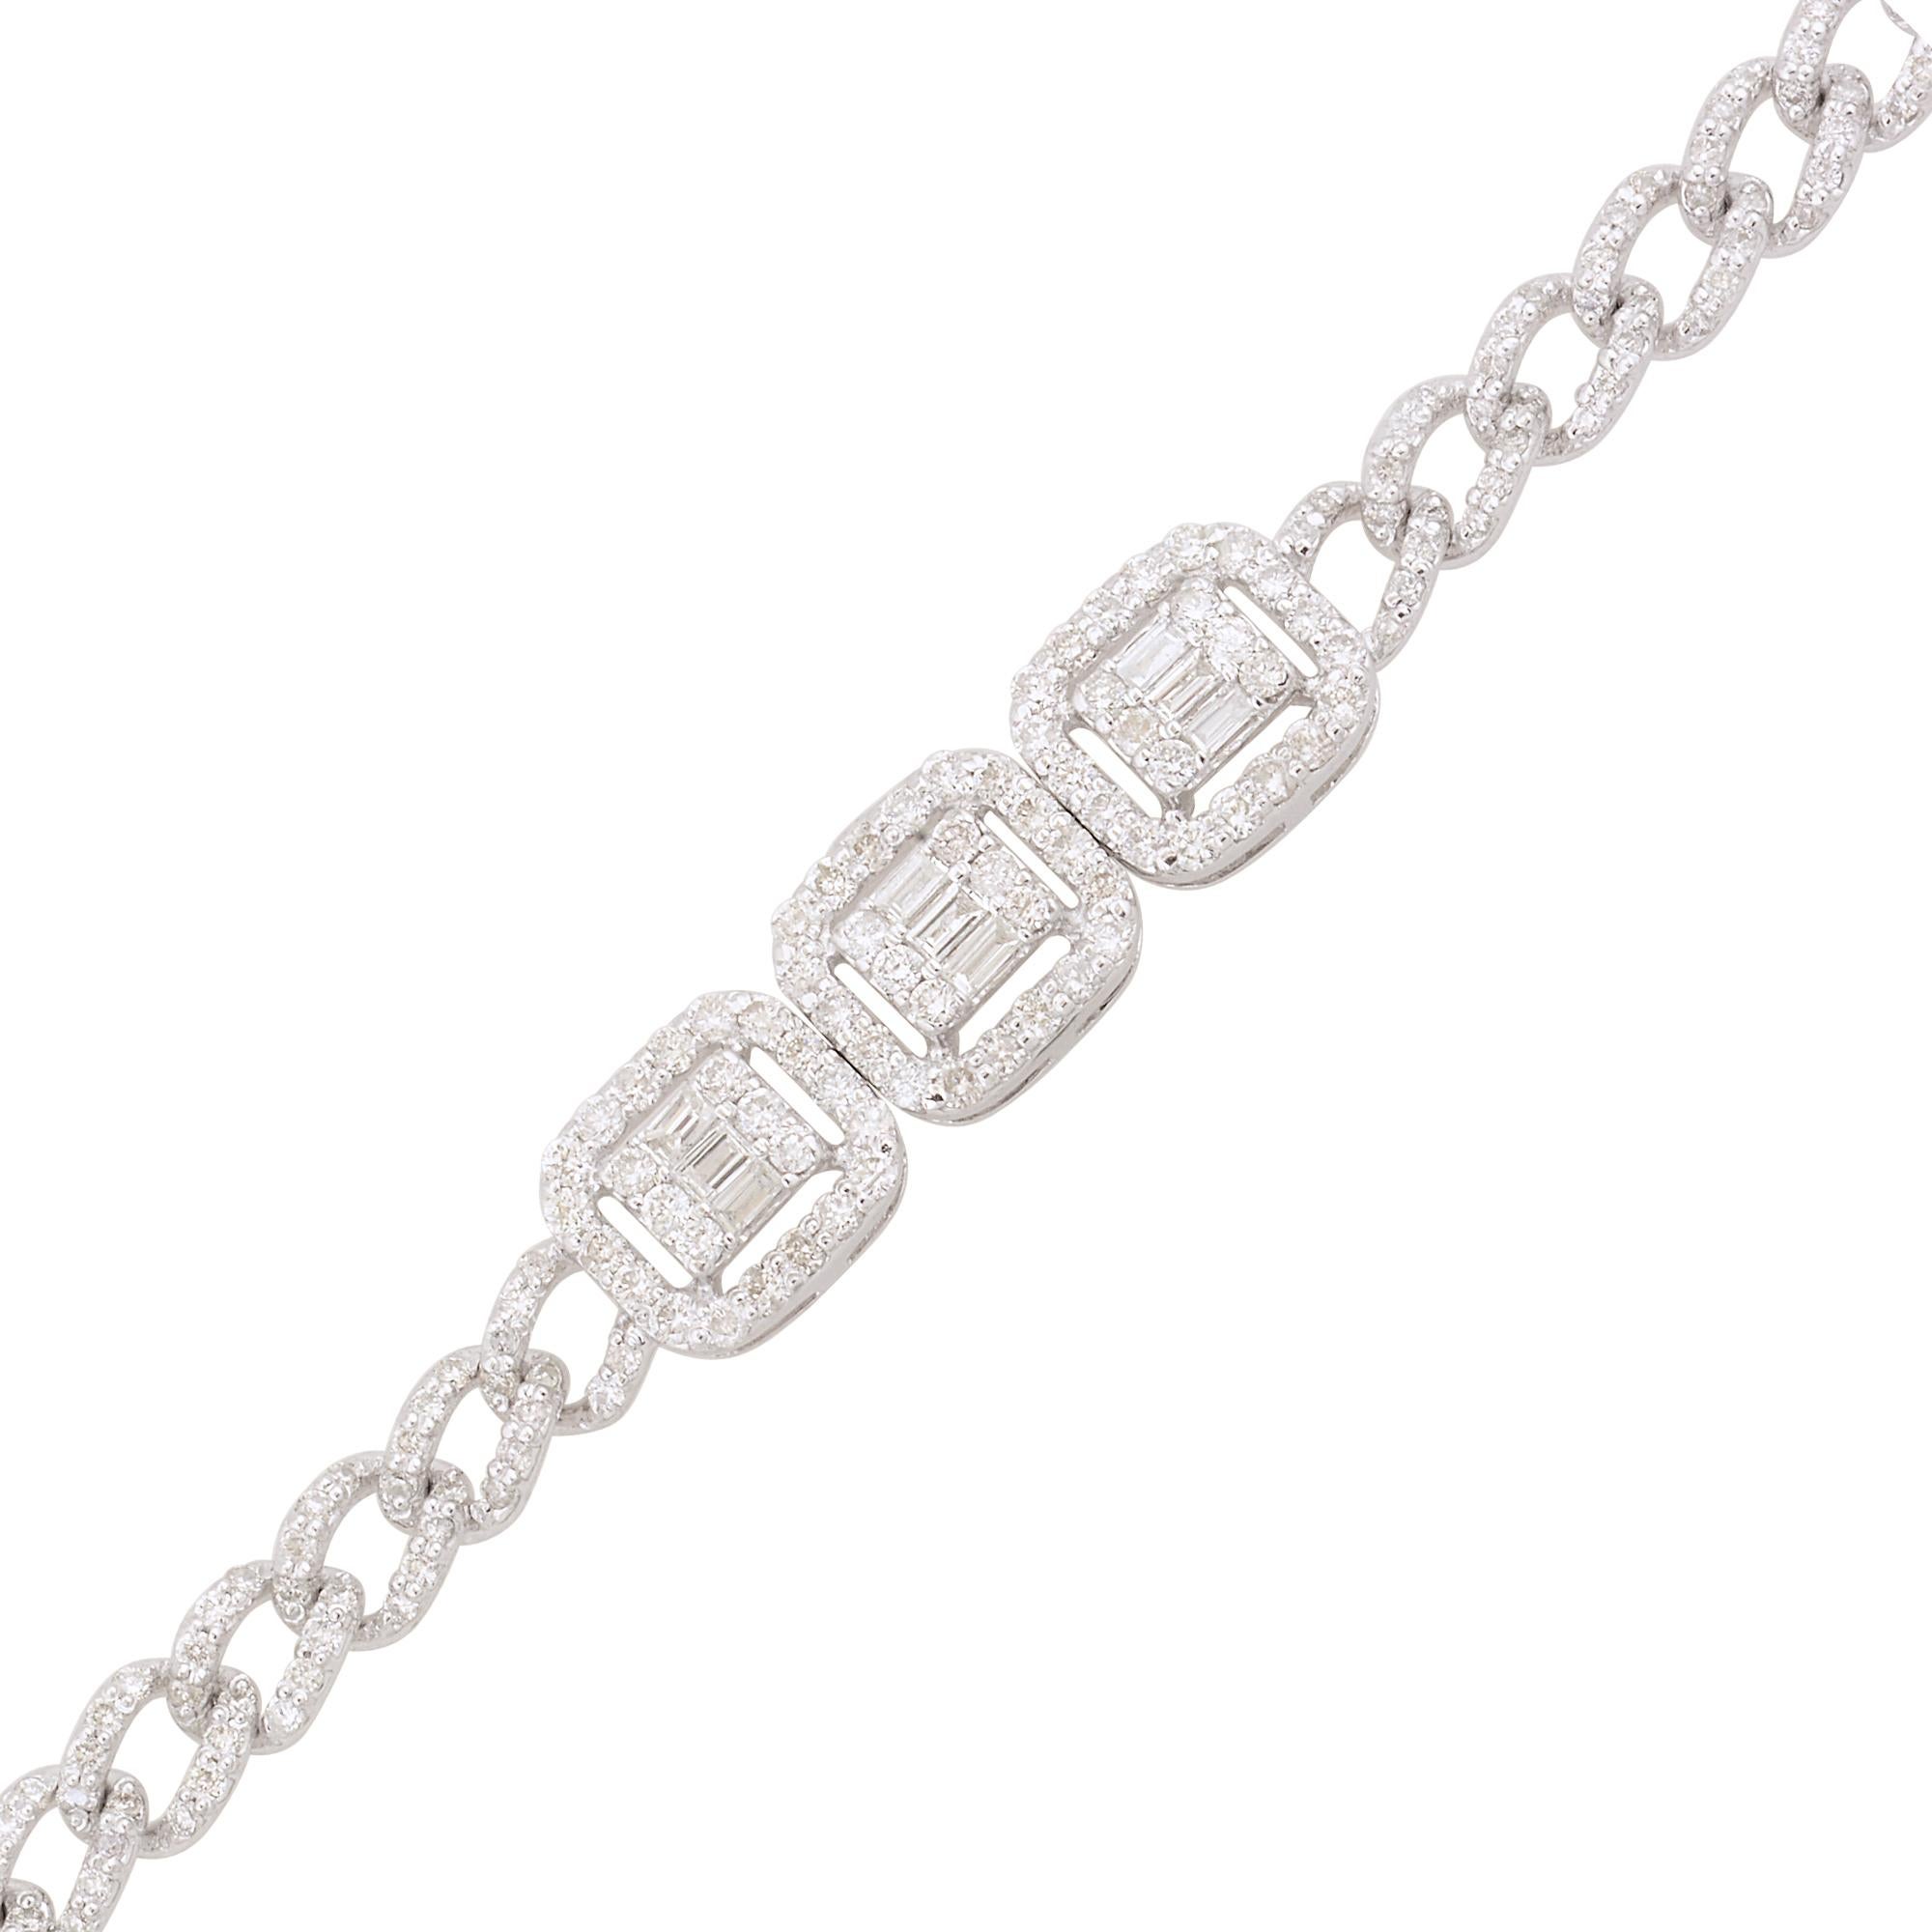 Ce bracelet à breloques en diamant est une pièce polyvalente qui peut être portée en diverses occasions, des sorties décontractées aux événements formels. Il ajoute une touche de glamour et de sophistication à tout ensemble et peut être superposé à